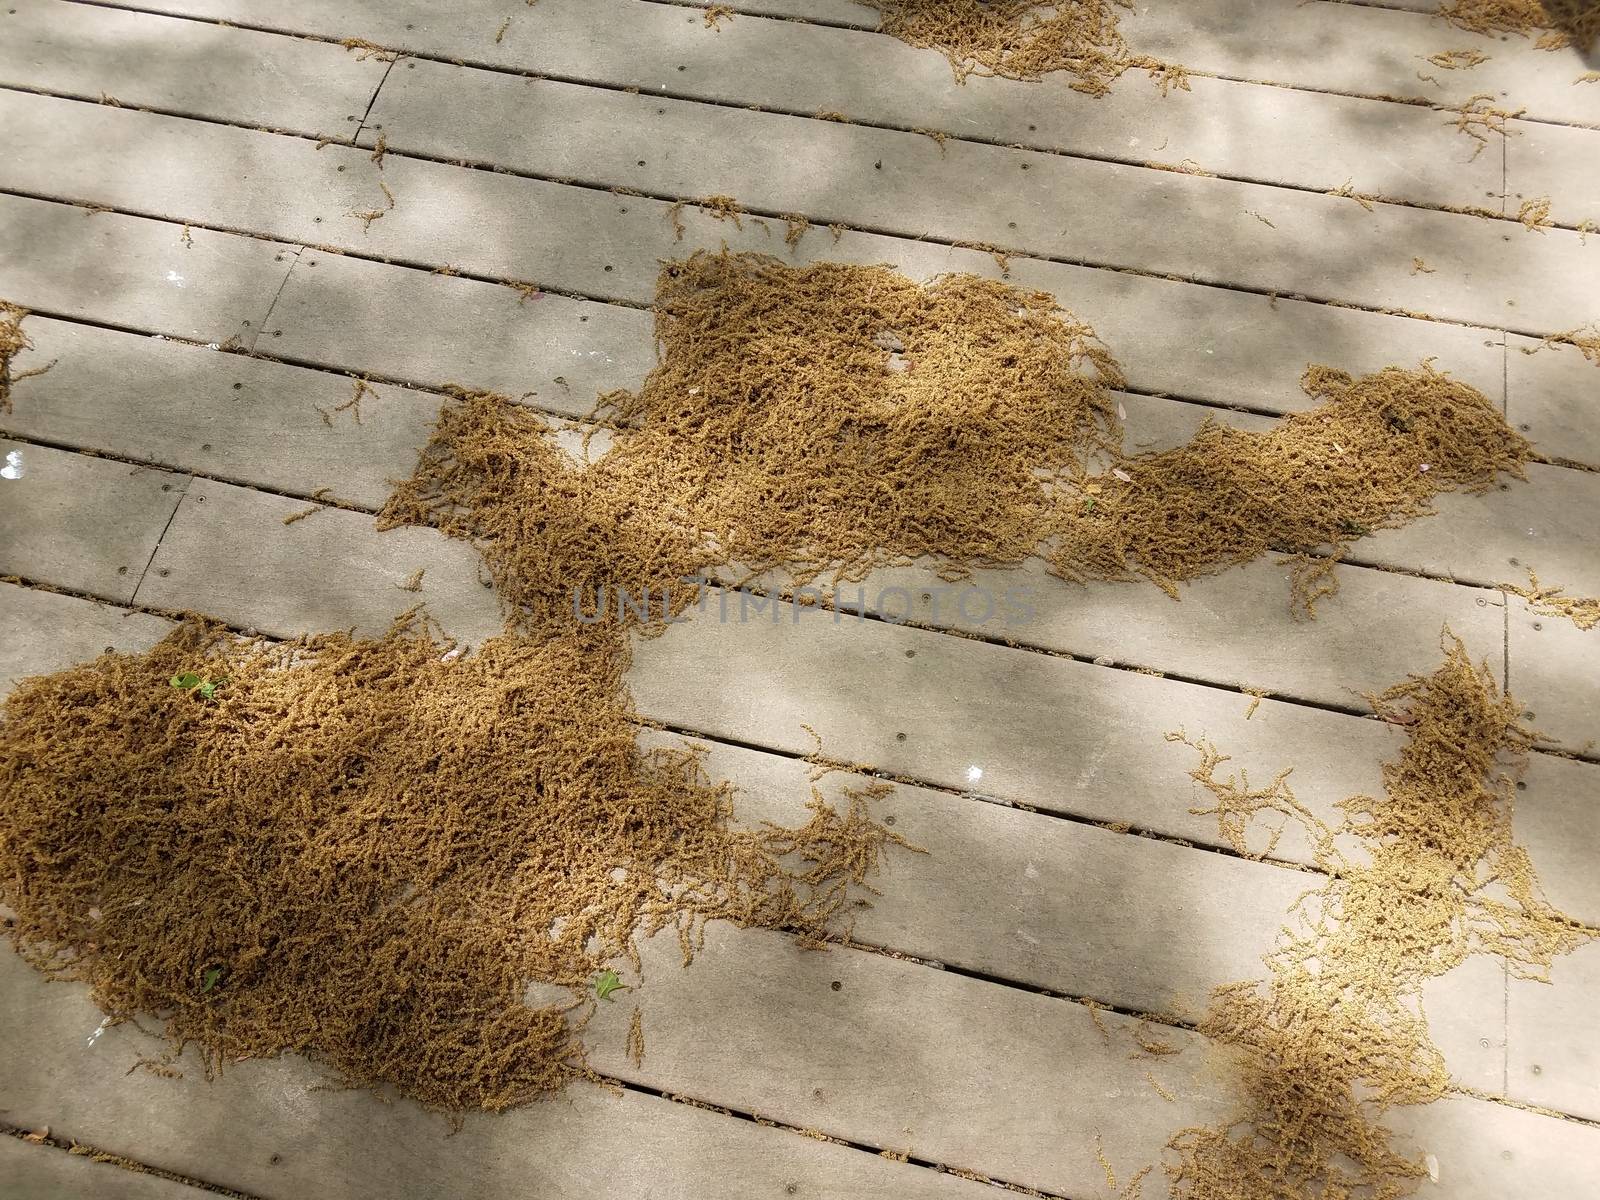 piles of pollen grains on brown wood deck outdoor